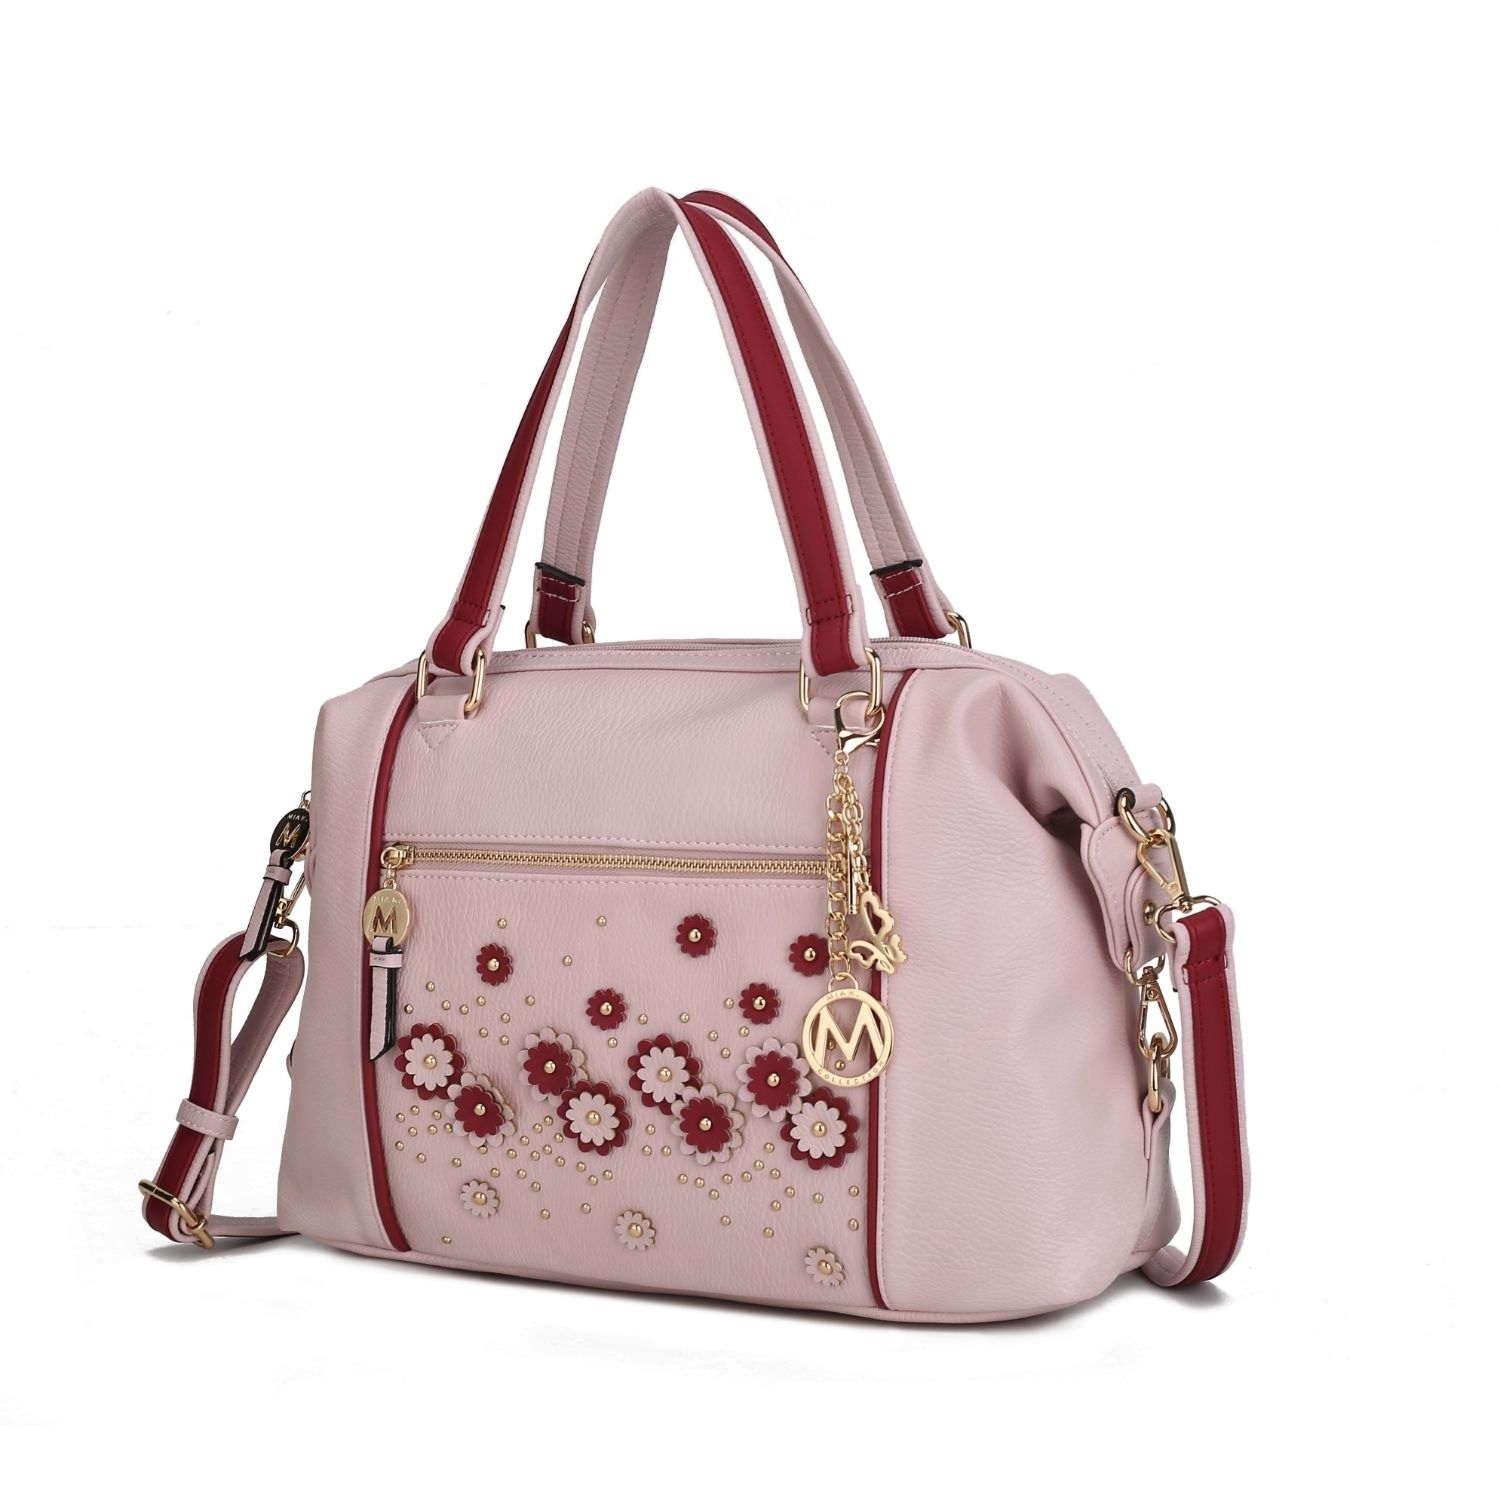 MKF Collection Francis Tote Handbag By Mia K - Blush